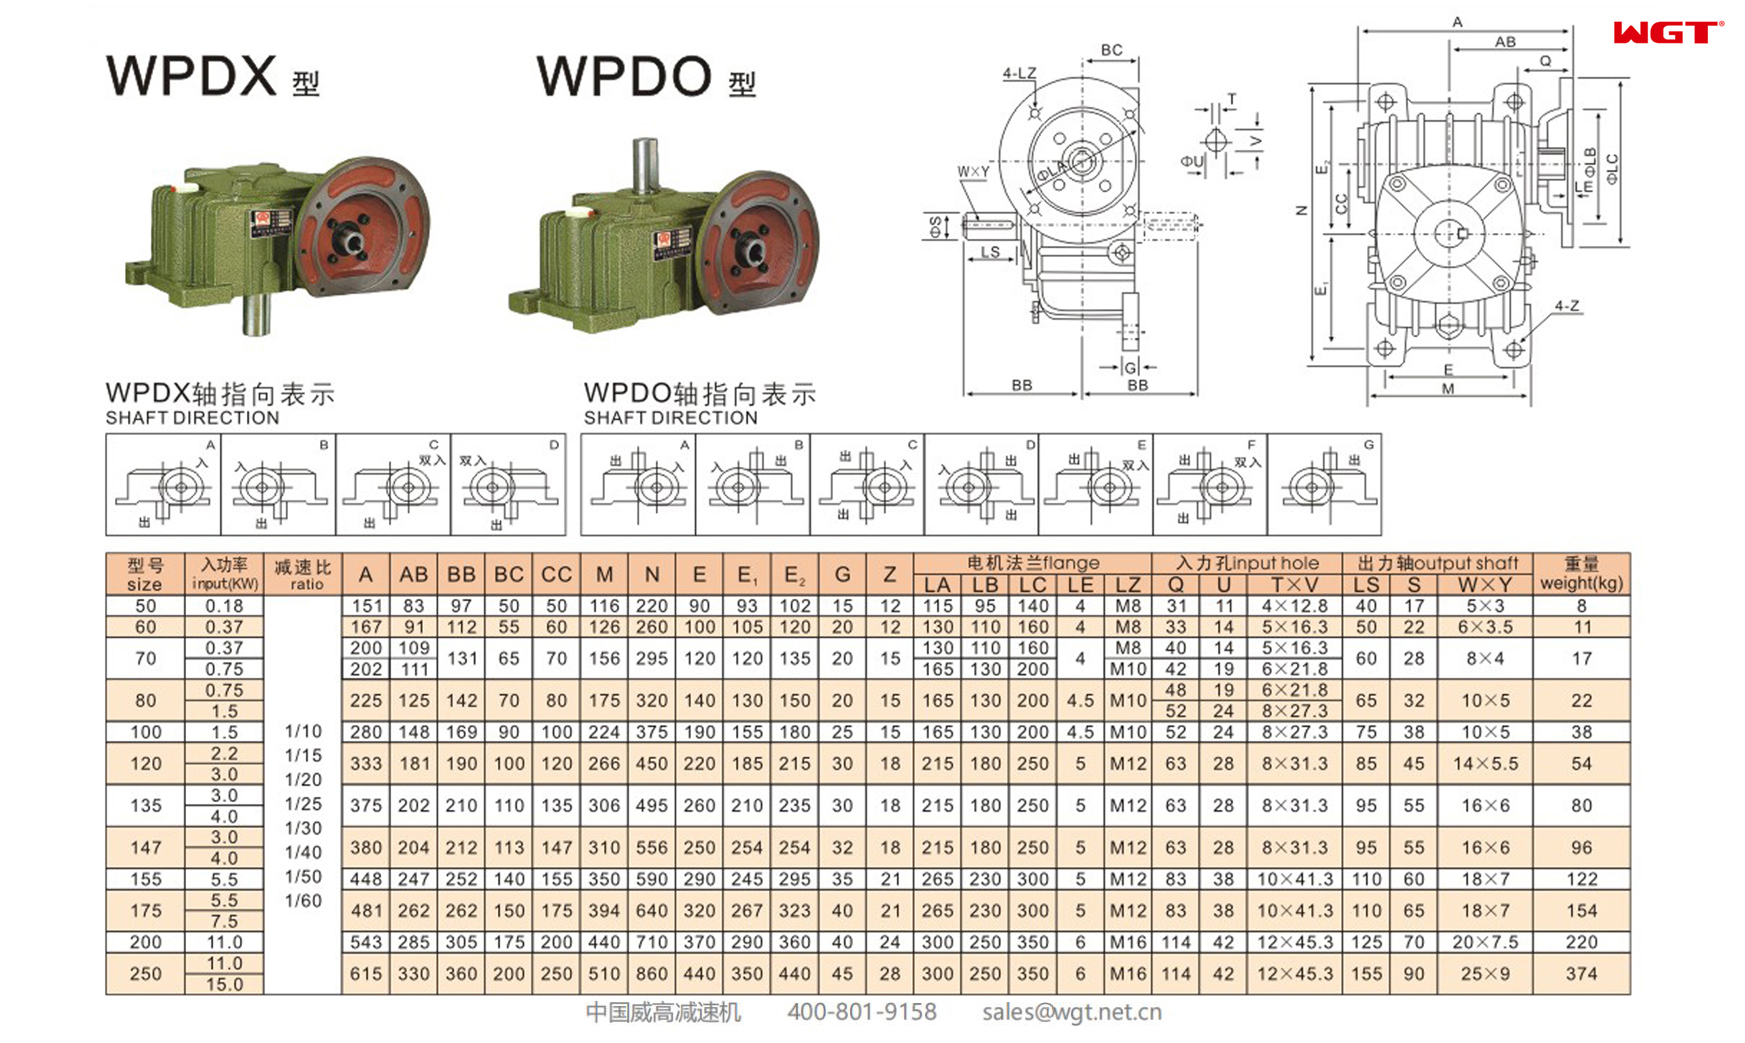 WPDX155 Червячный редуктор Односкоростной редуктор